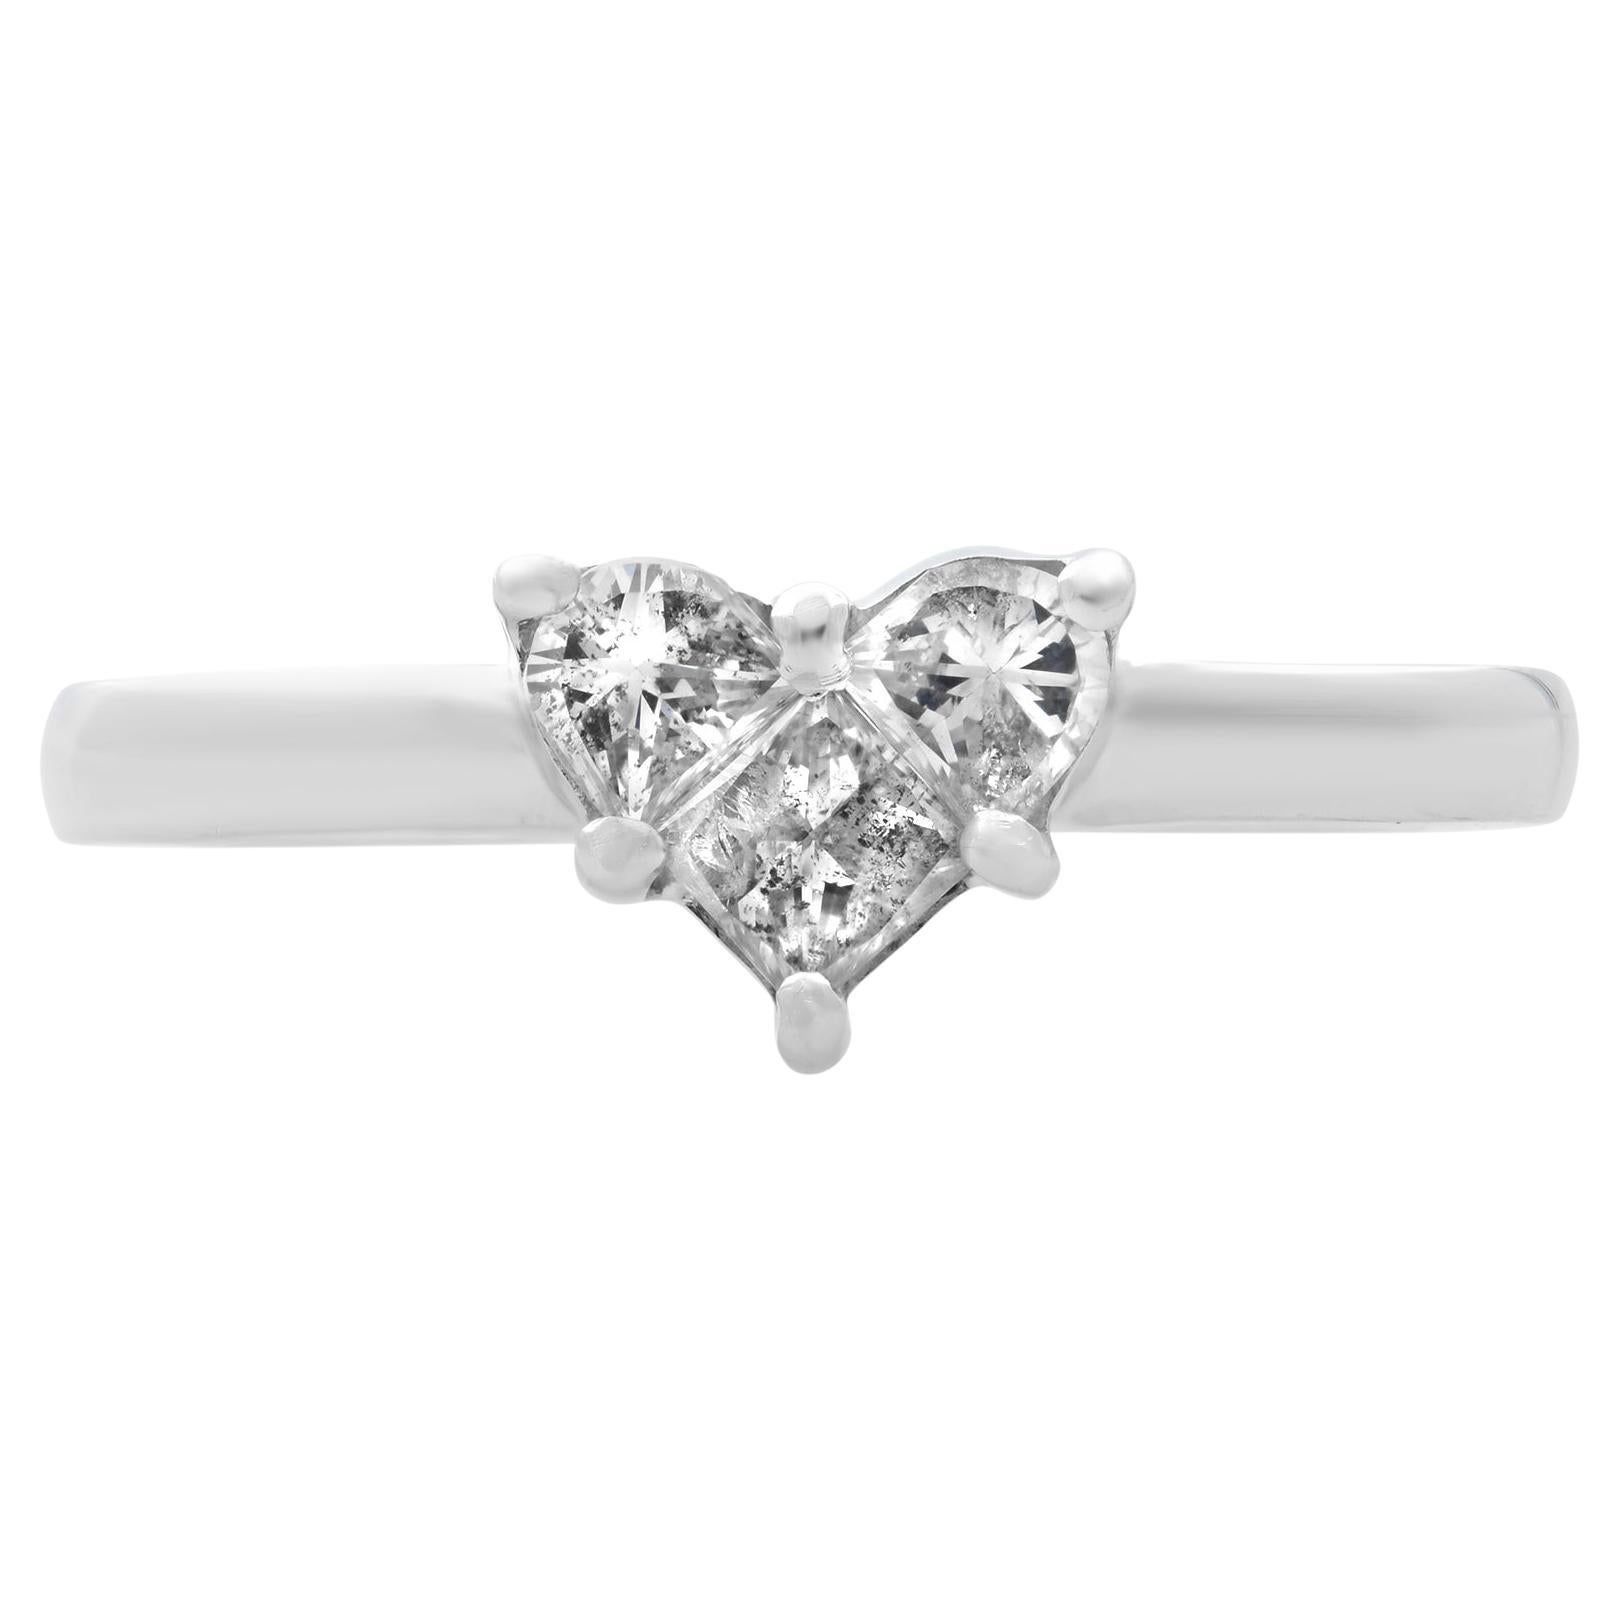 Rachel Koen Heart Shaped Diamond Ladies Ring 14K White Gold 0.50Cttw For Sale